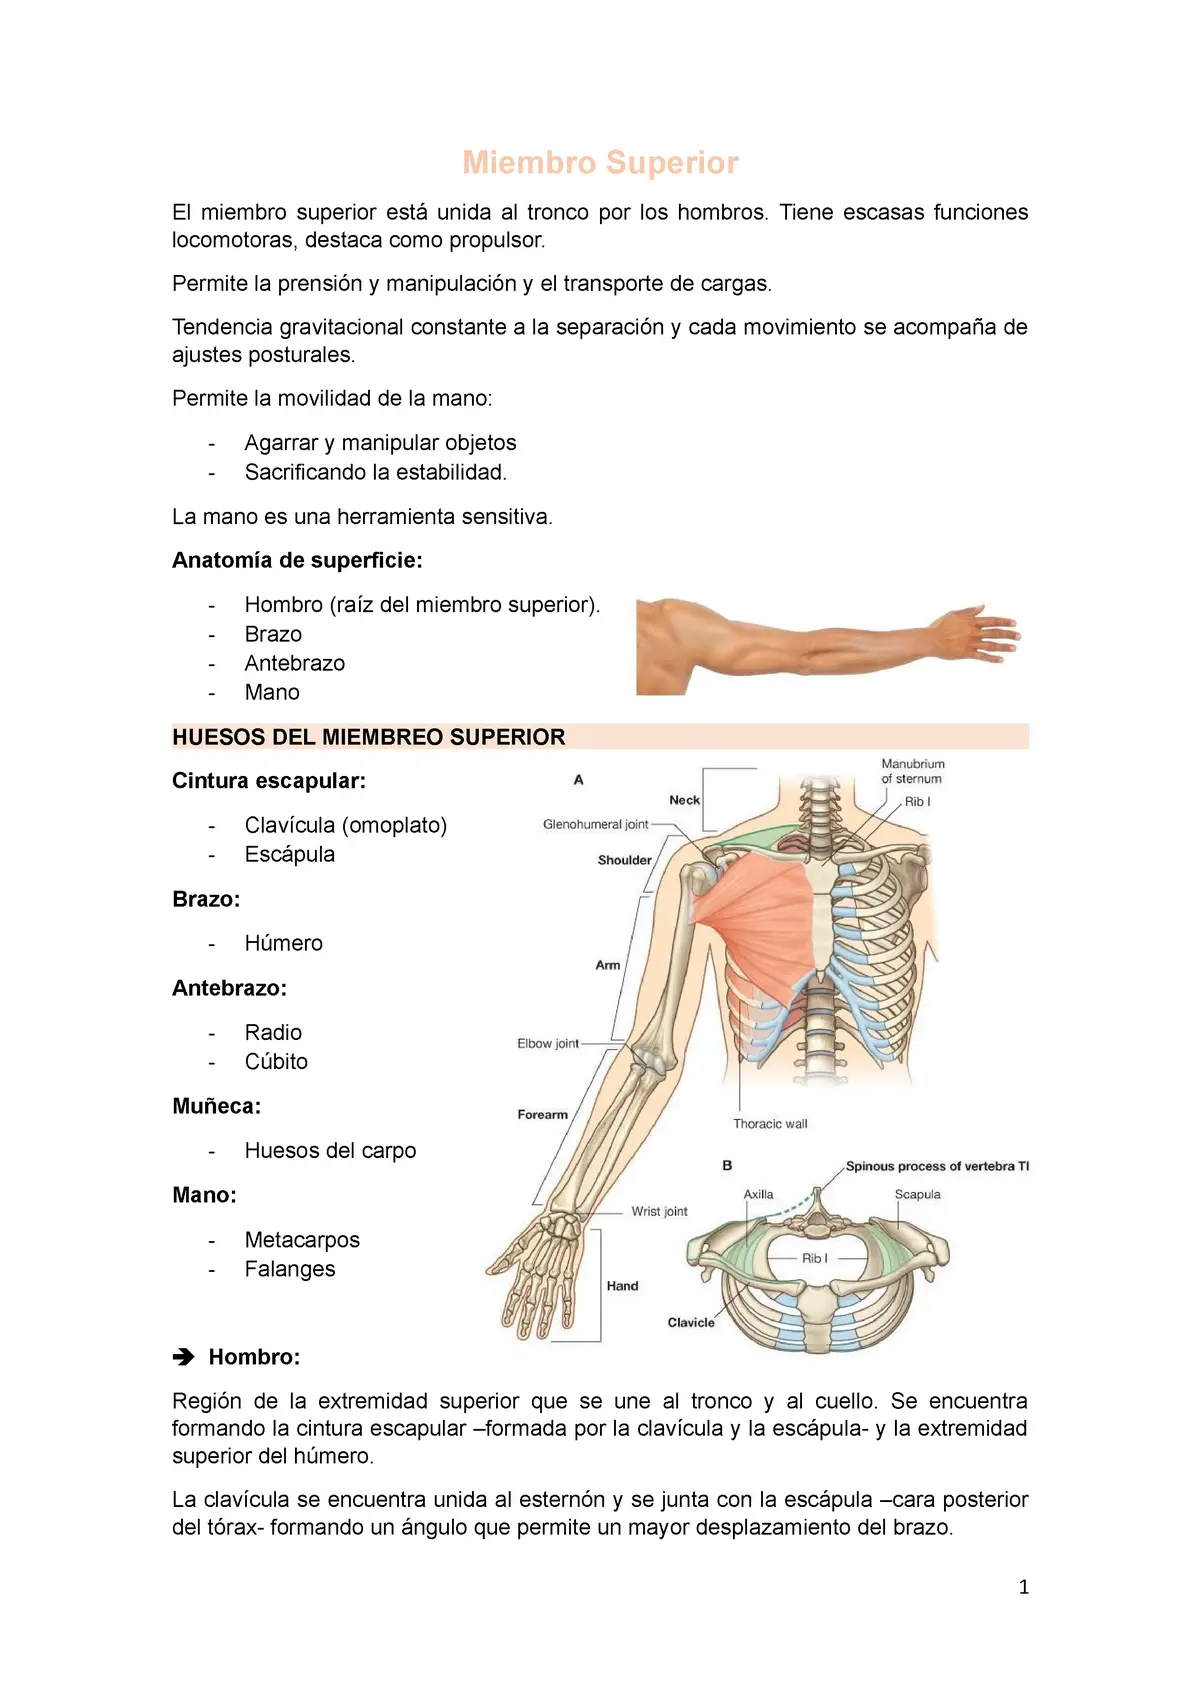 anatomia miembro superior resumen - Cuáles son los huesos que forman el miembro superior